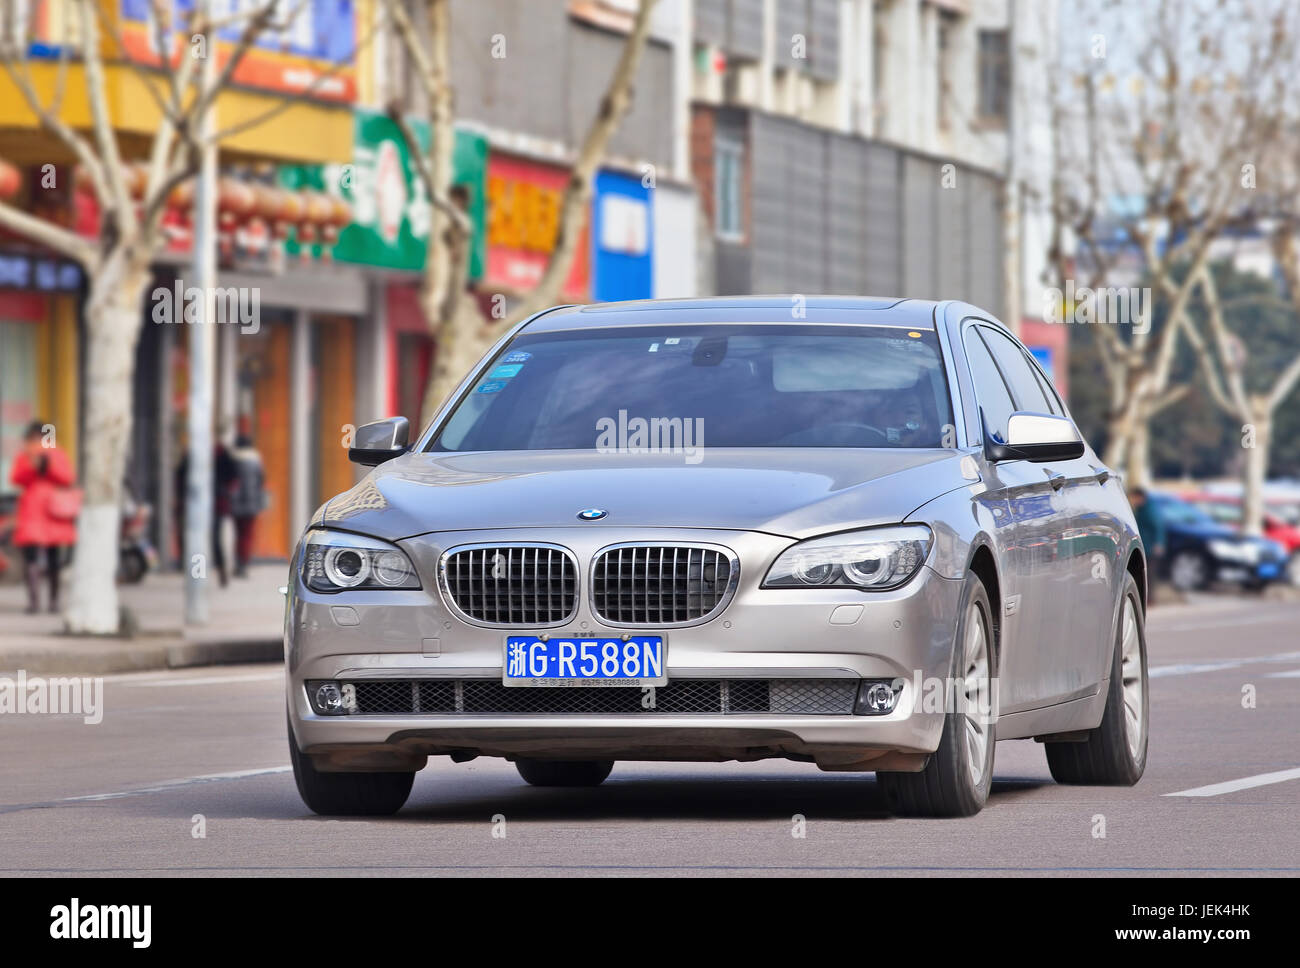 BMW série 5 sur la route. Les ventes de BMW seront touchés en 2016 par la concurrence, le ralentissement de l'économie chinoise et la répression de la consommation ostentatoire. Banque D'Images